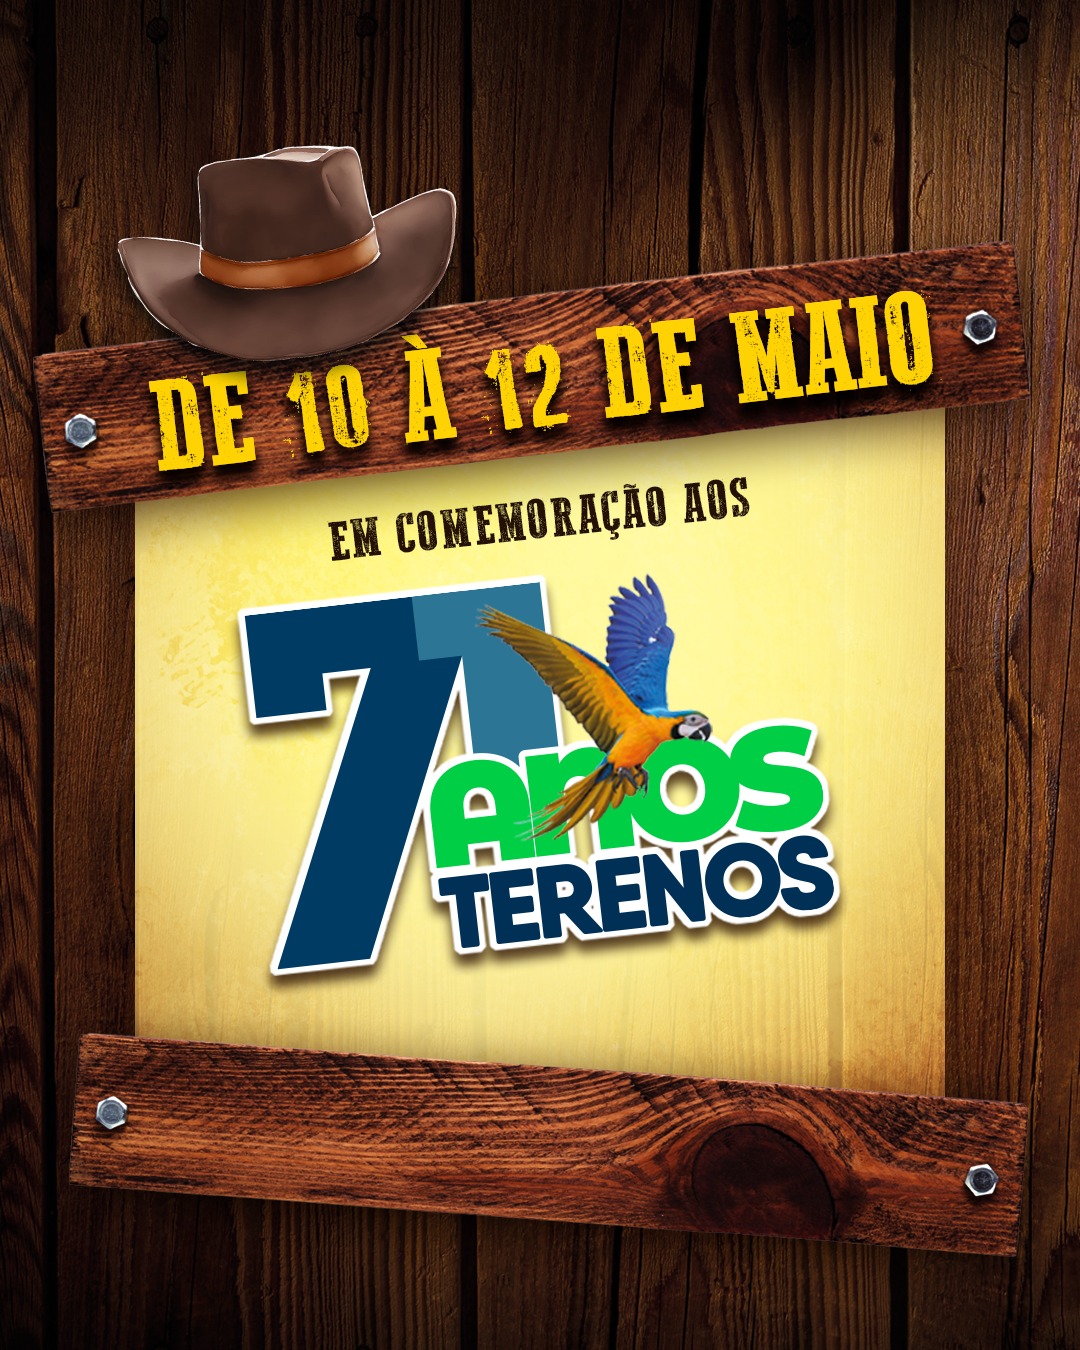 Em comemoração aos 71 anos de Terenos vem aí: Rodeio Show!